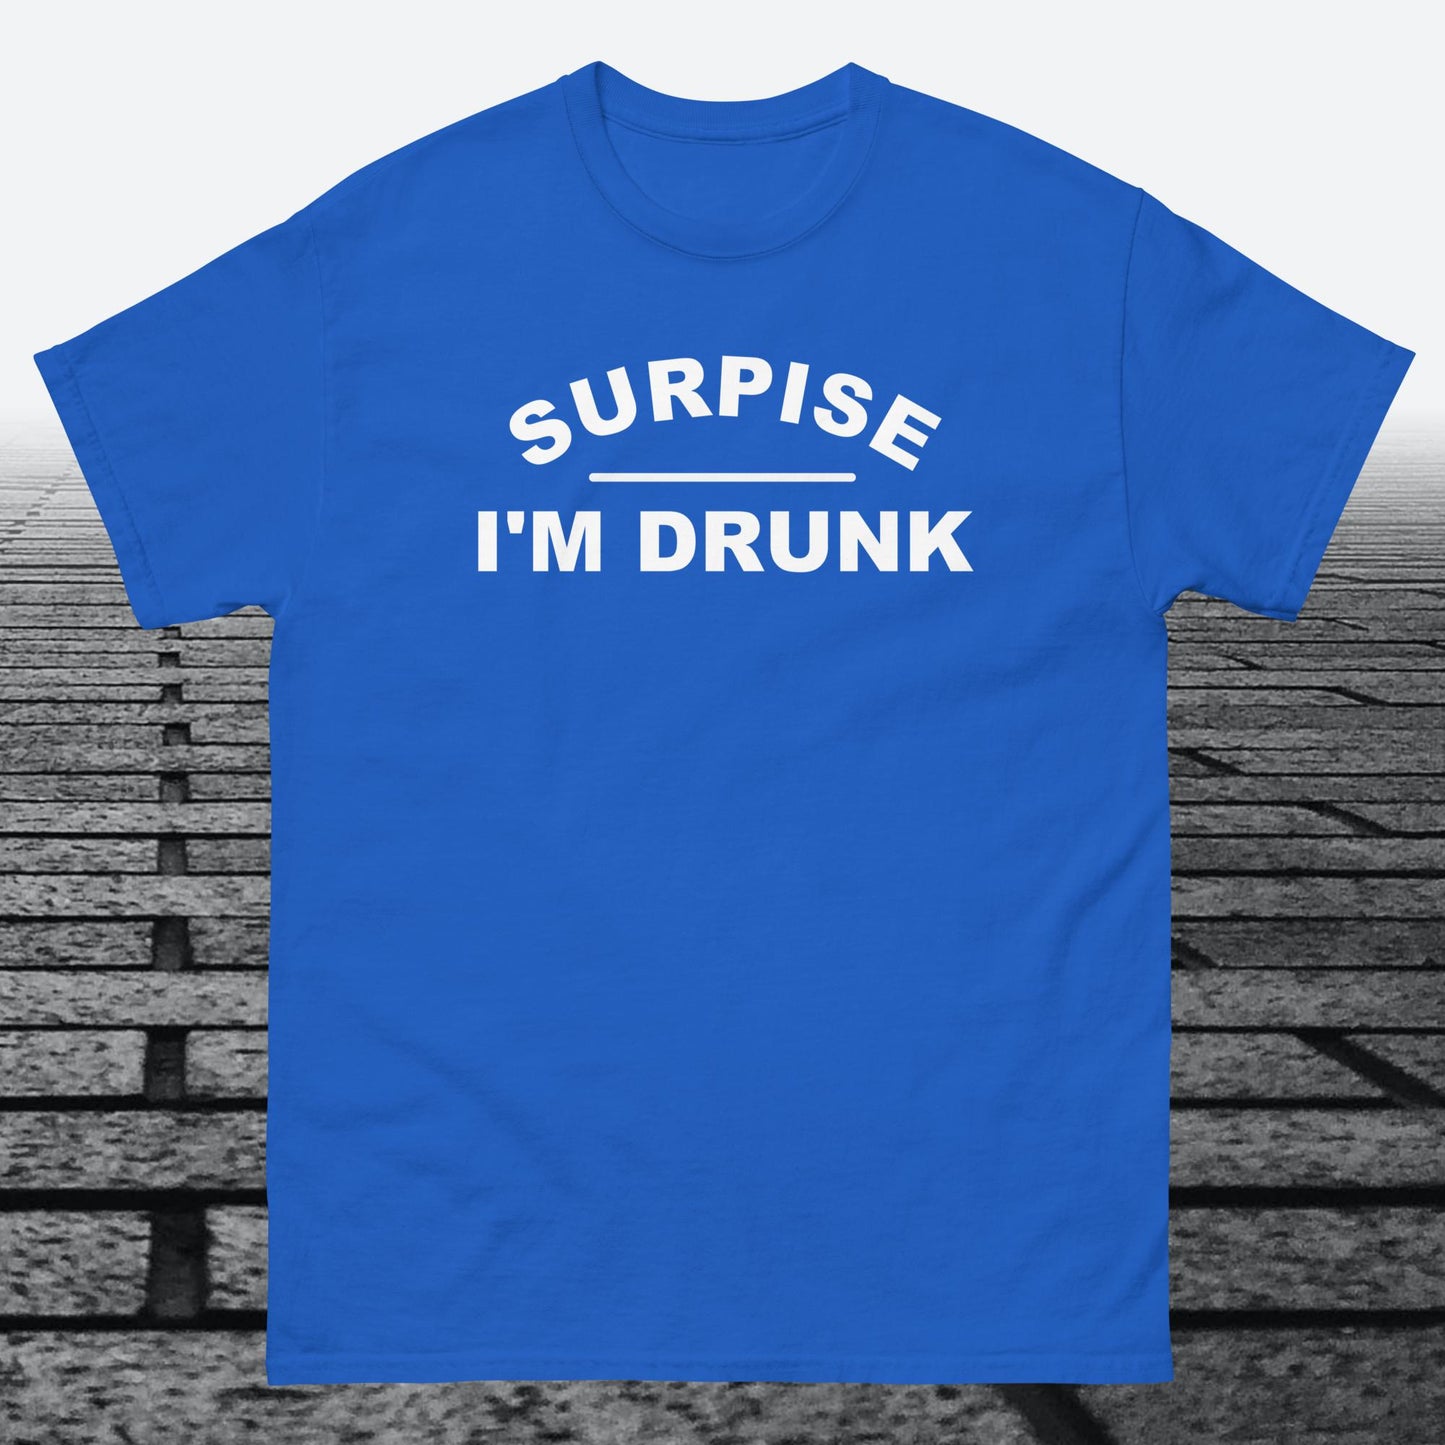 Surprise I'm Drunk, Cotton T-shirt